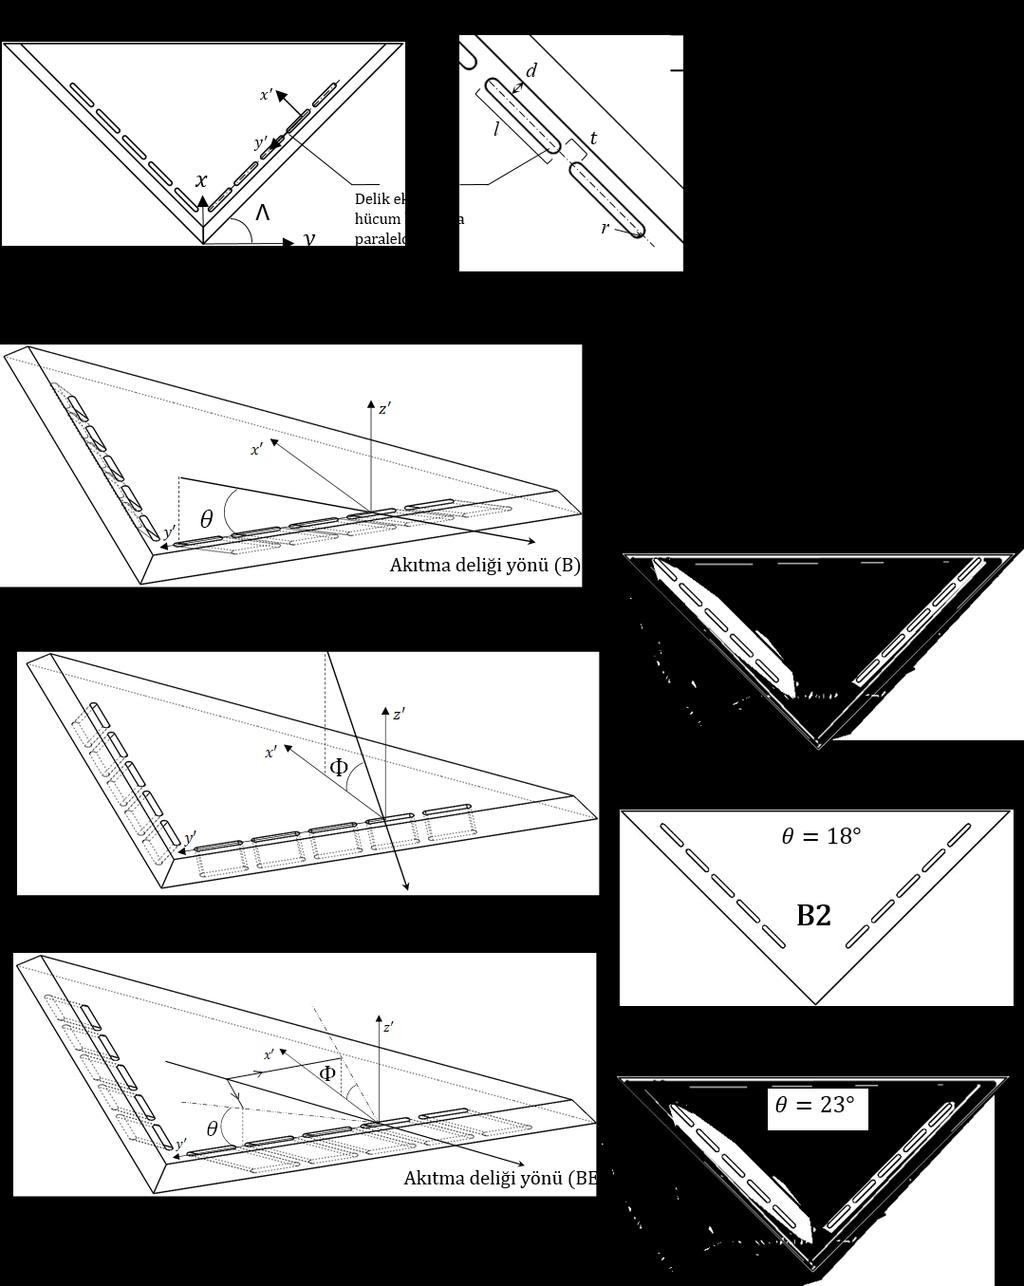 Şekil 1: Akıtma delikli kanat geometrileri Referans kanatlar hariç tüm kanatlar için basınç yüzeyi Şekil 1 in üst sol resimde gösterilmiştir.